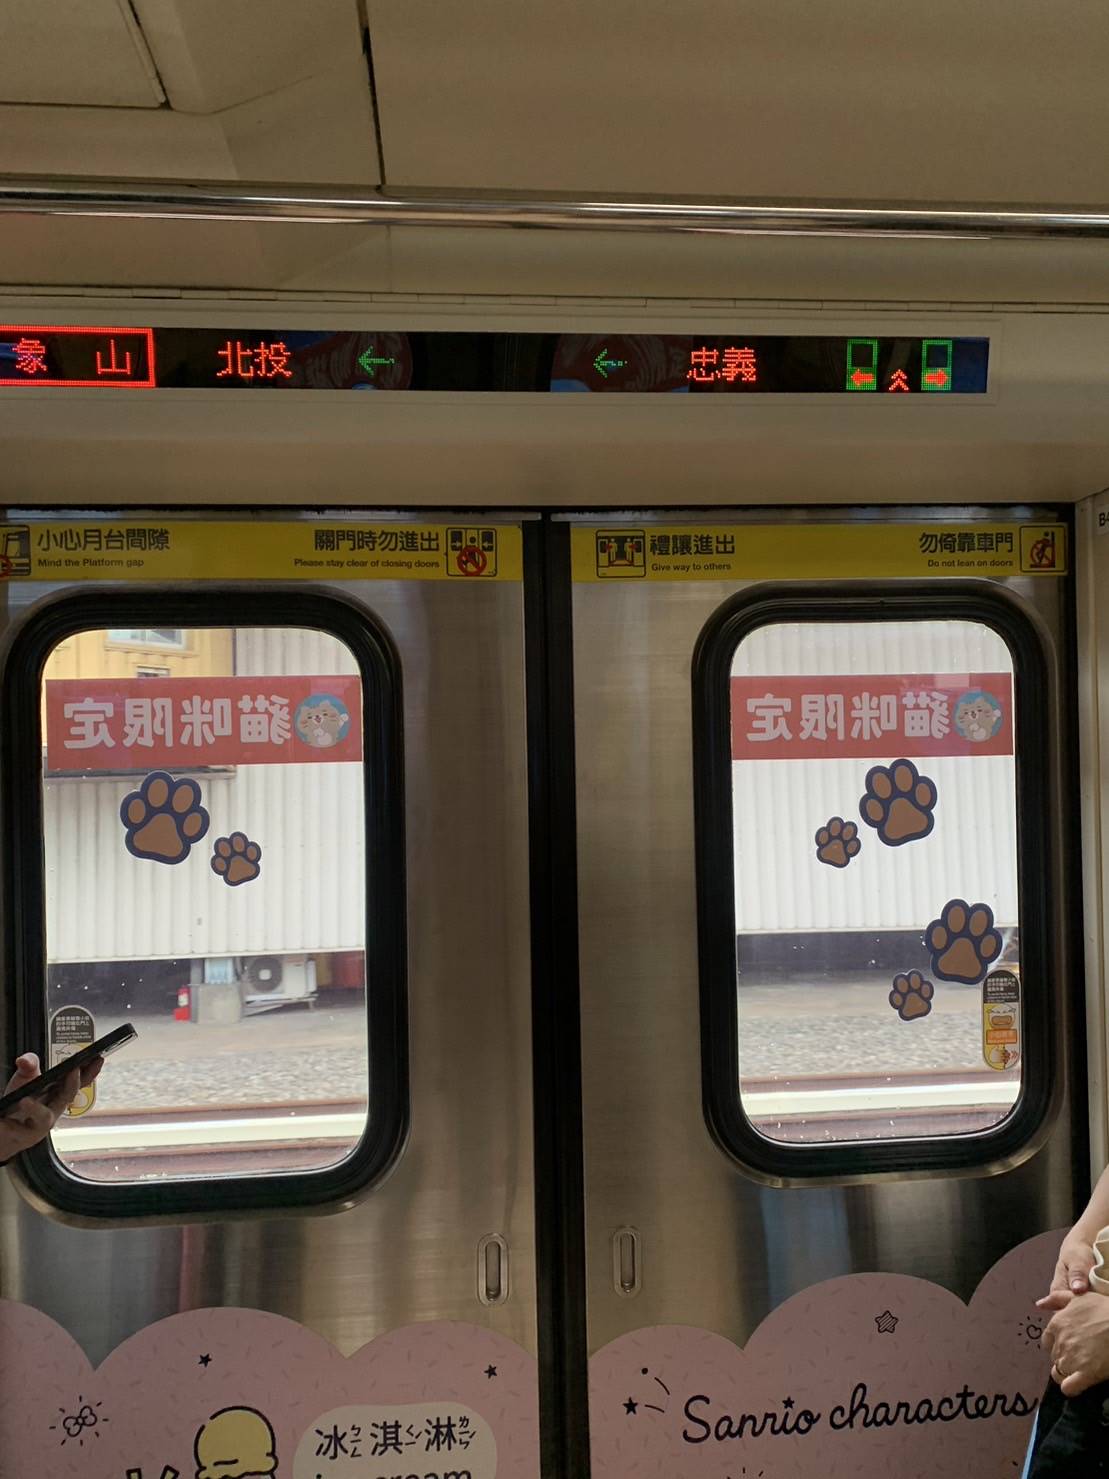 北捷「寵物友善列車」在列車車門上明顯標示「貓咪限定」、「狗狗限定」字樣。